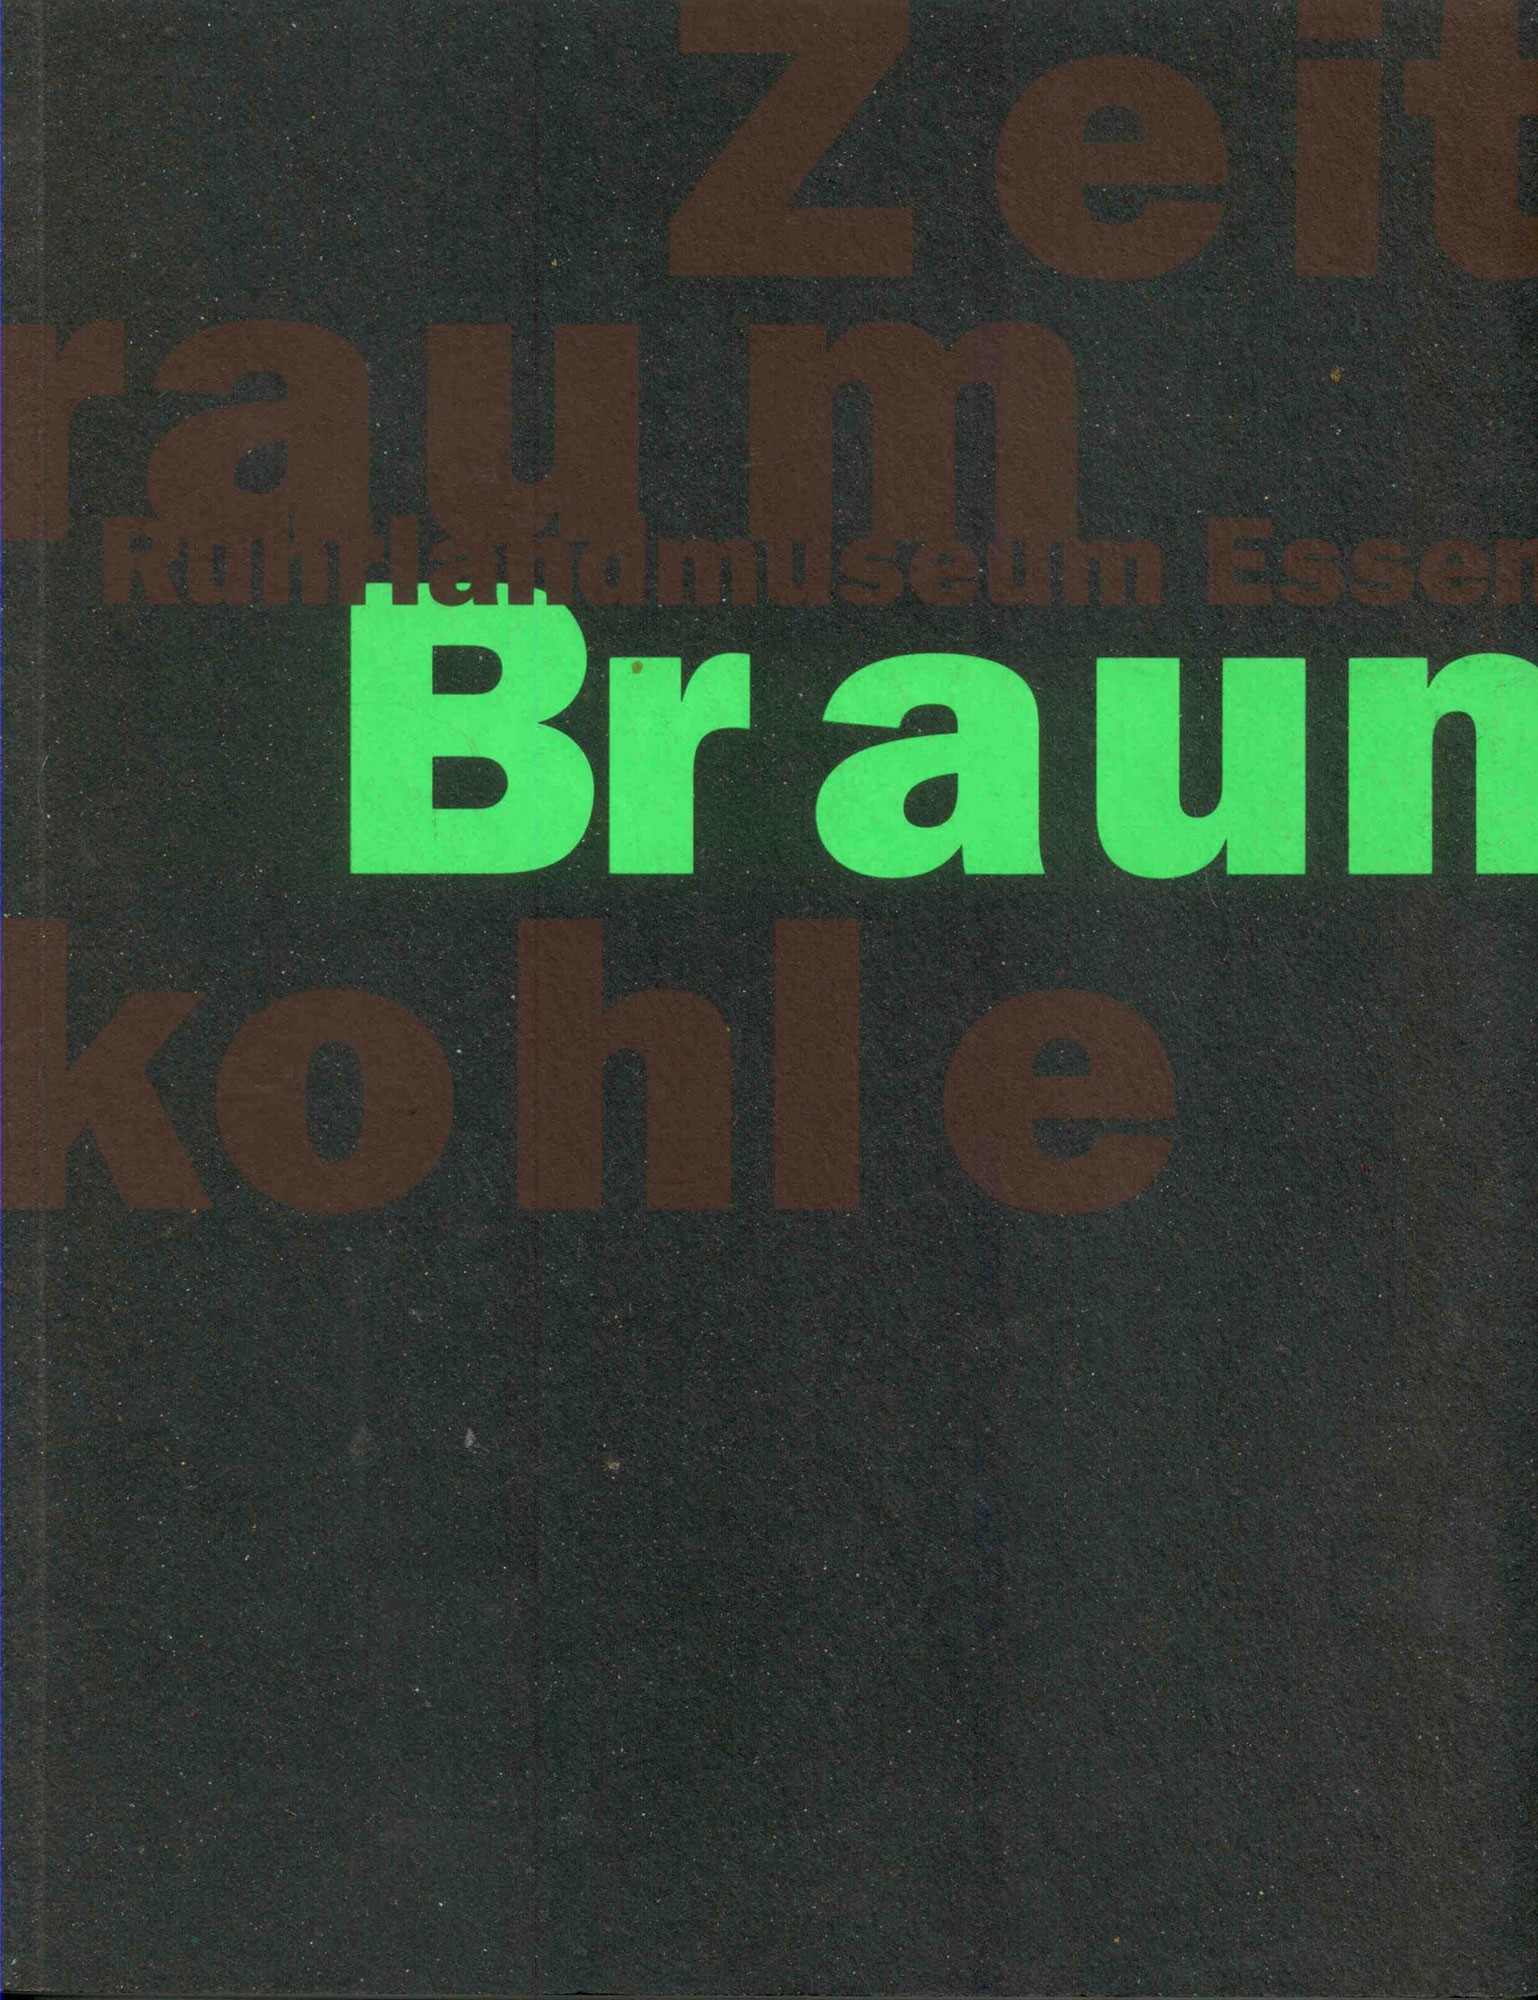 Stottrop, U.: Zeitraum Braunkohle. Eine Ausstellung des Ruhrlandmuseums Essen 12. November 1993 bis 13. Februar 1994.